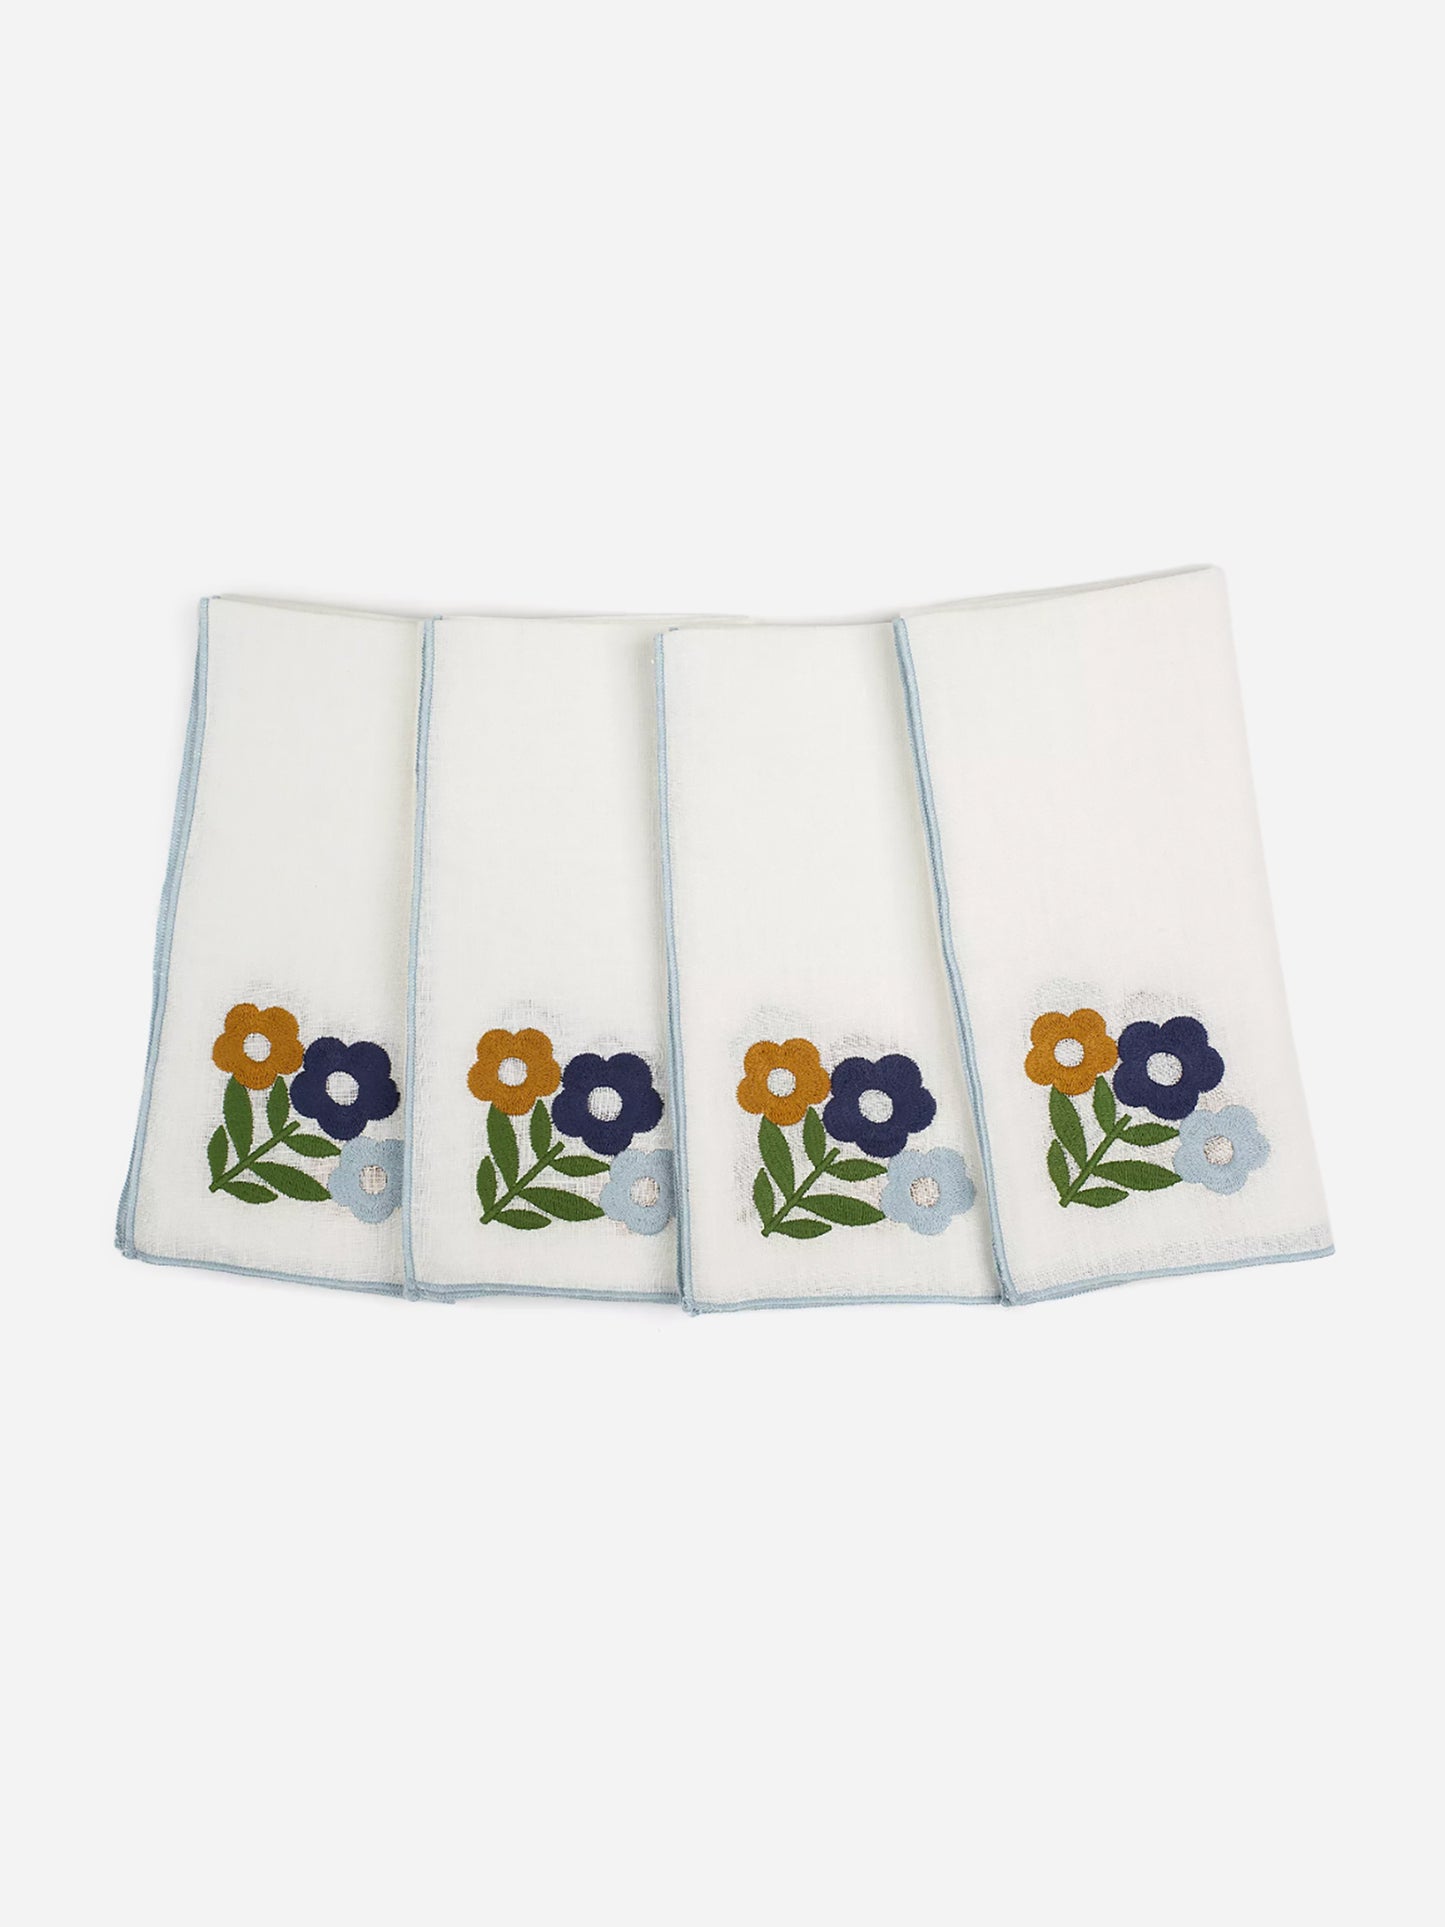 Misette Floral Embroidered Linen Napkin Set